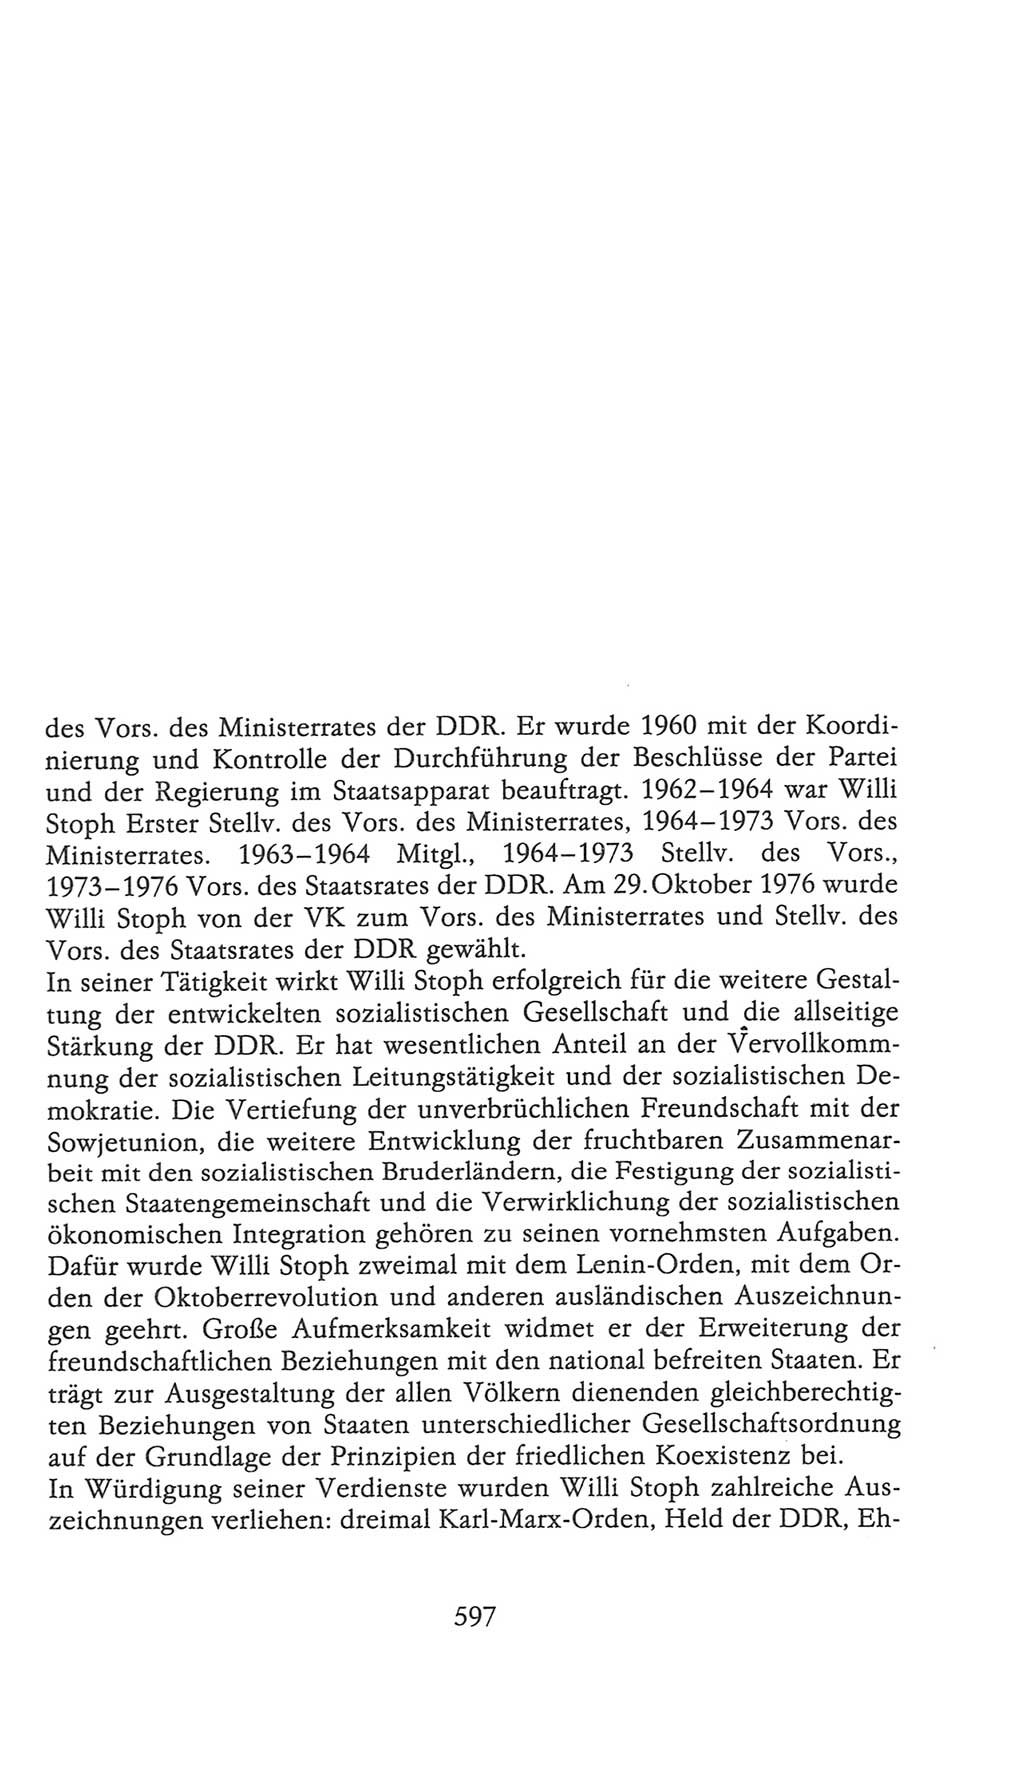 Volkskammer (VK) der Deutschen Demokratischen Republik (DDR), 9. Wahlperiode 1986-1990, Seite 597 (VK. DDR 9. WP. 1986-1990, S. 597)